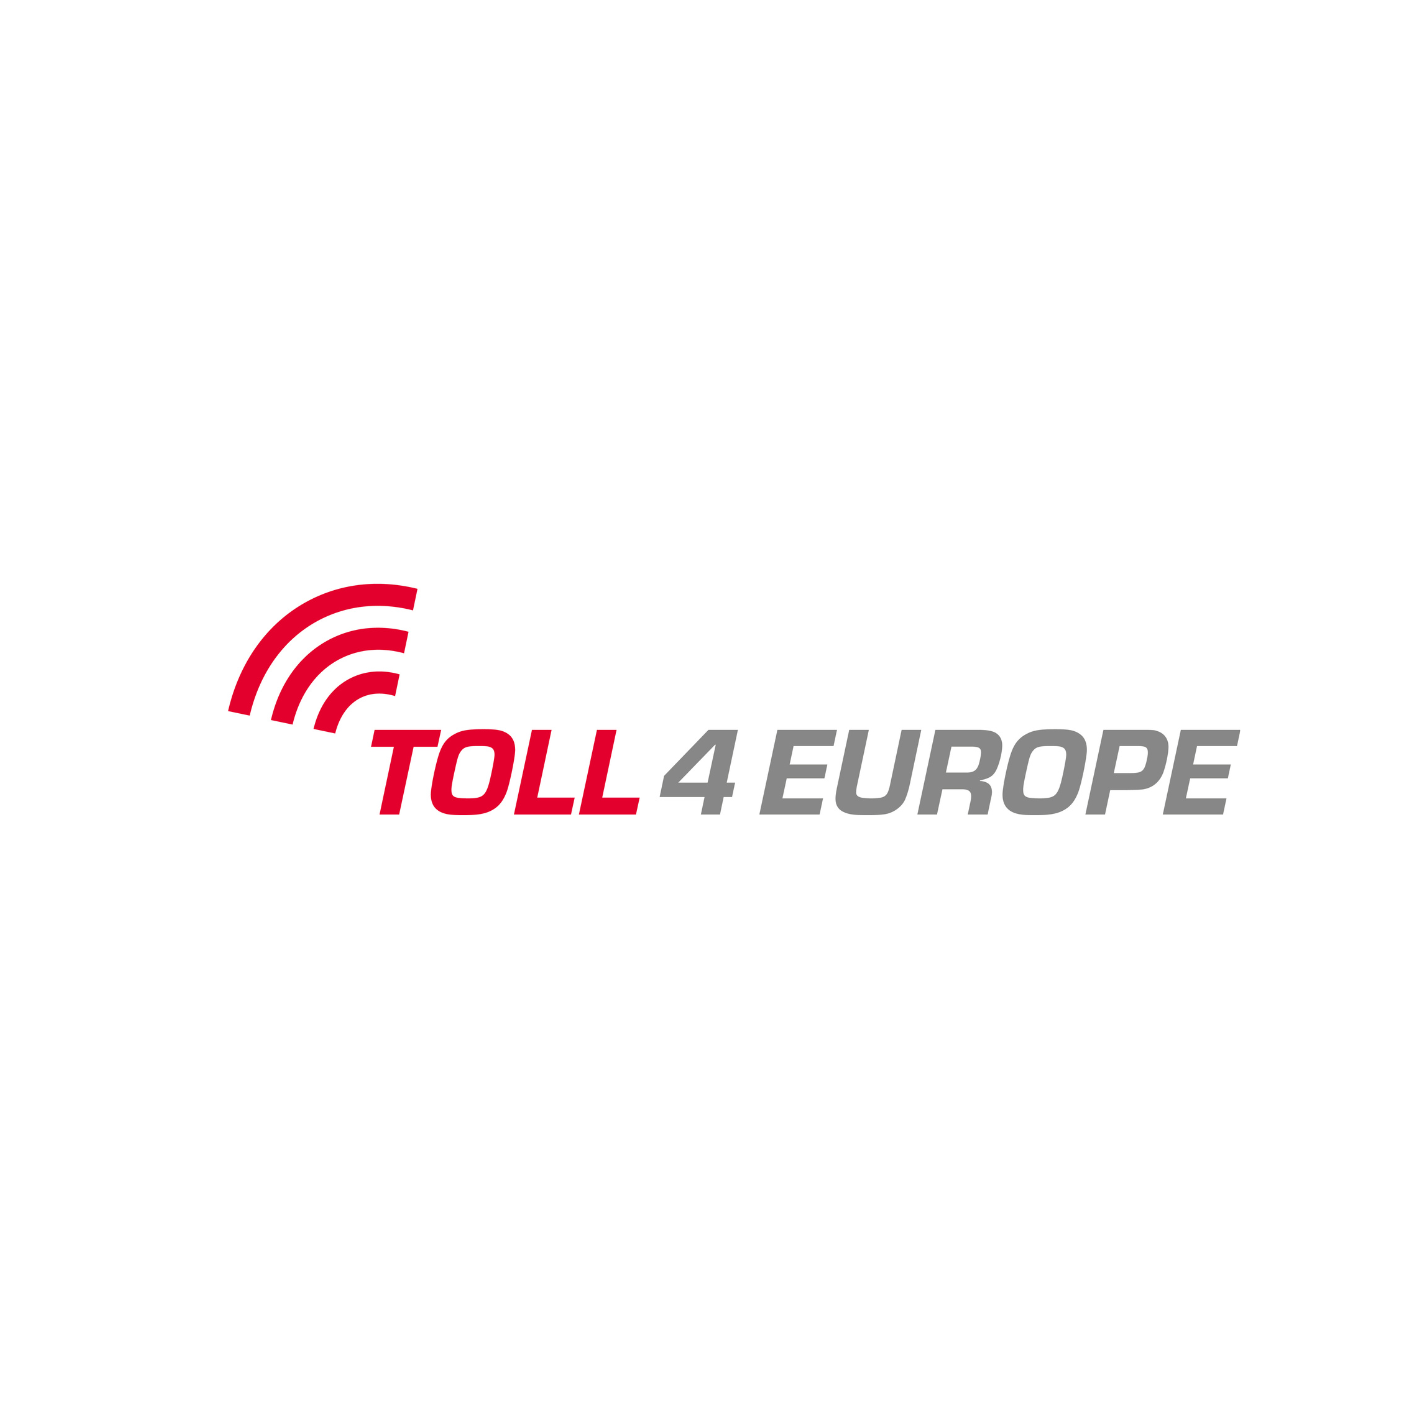 Toll-4-europe-logo